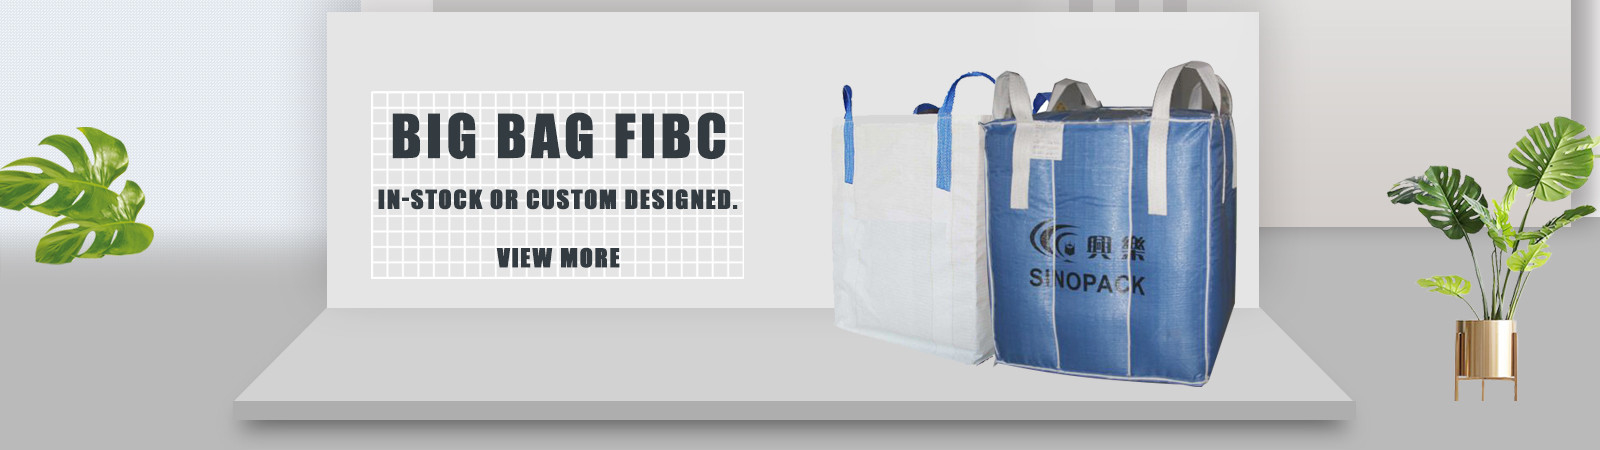 ποιότητας Big Bag FIBC εργοστάσιο